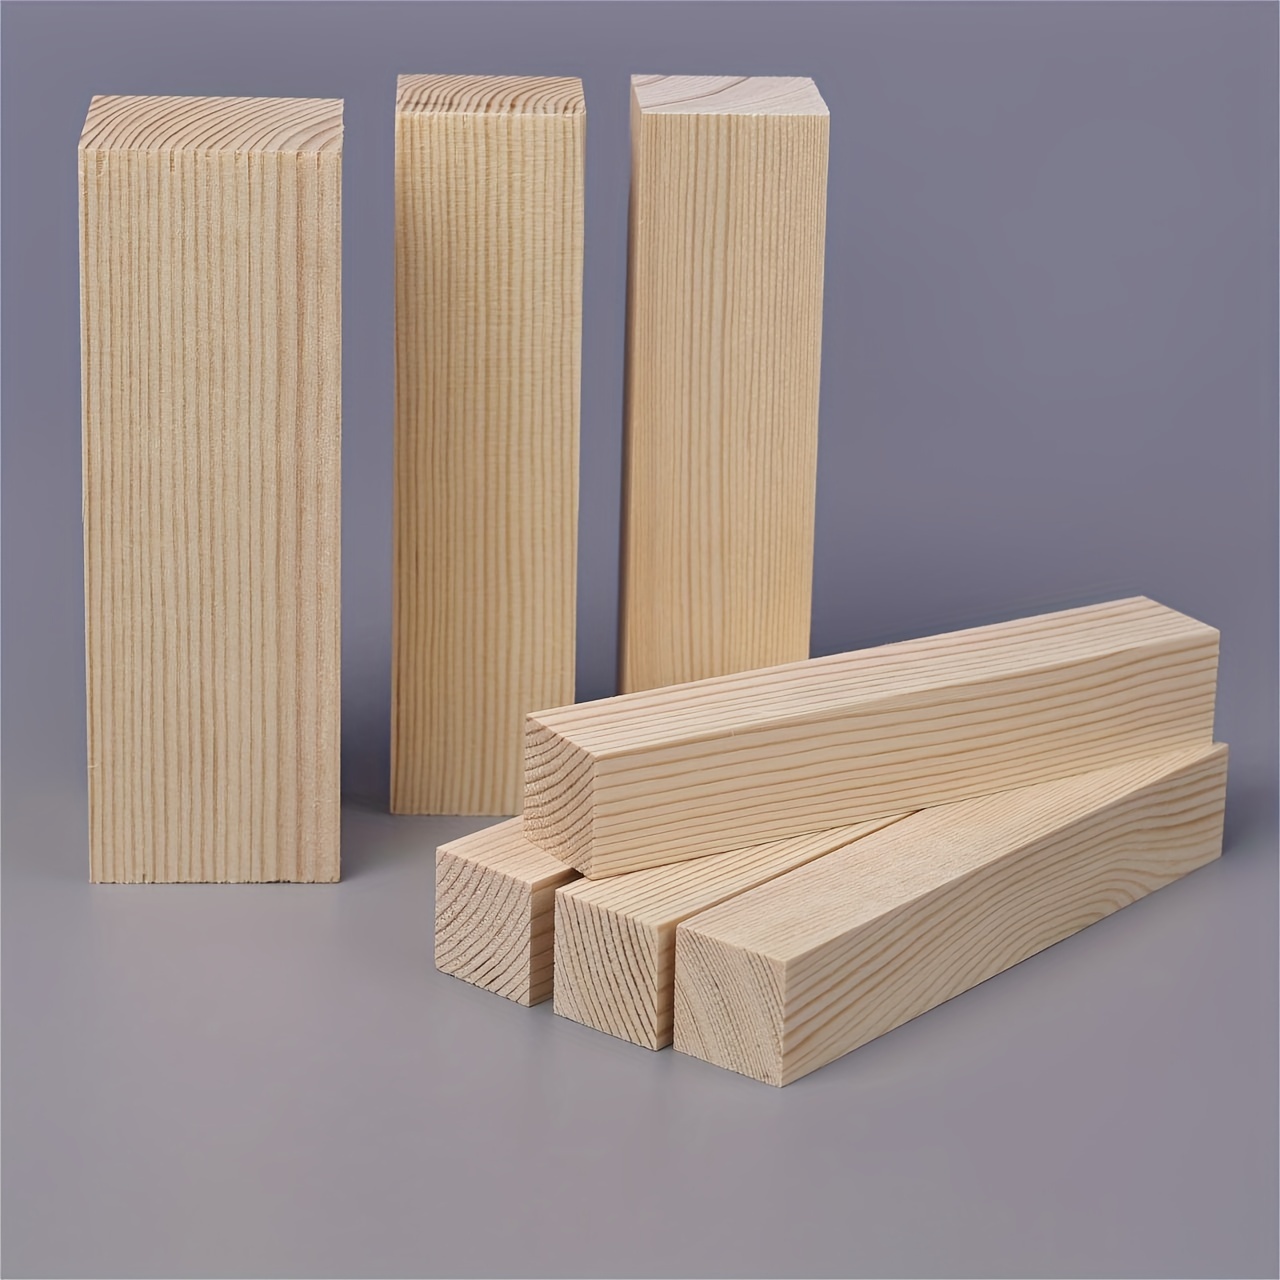 Blocco per intaglio del legno Kit di blocchi per intaglio del